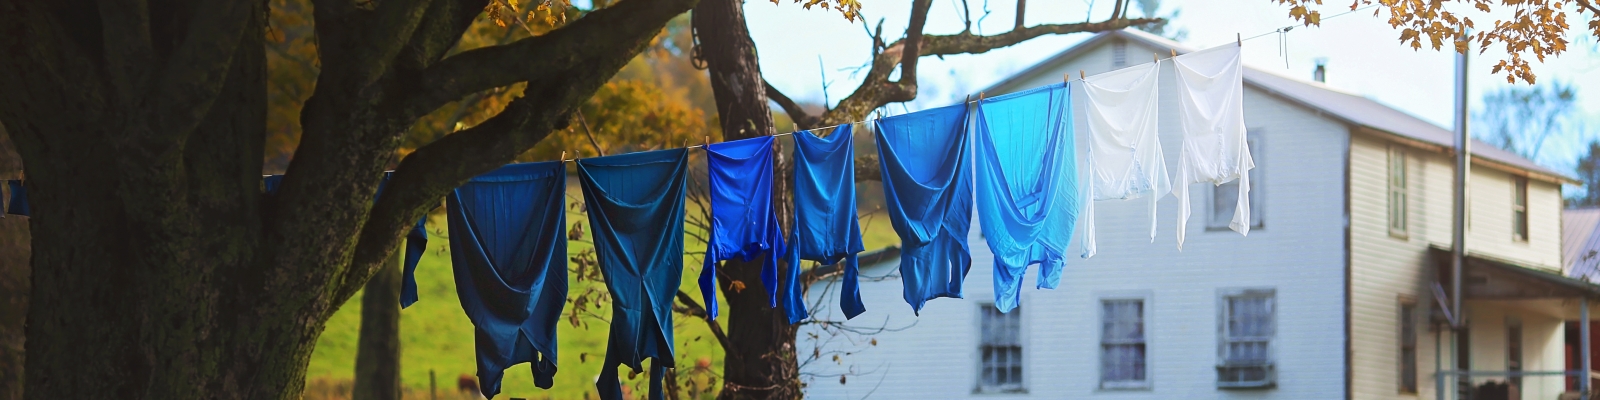 Laundry hanging along NY's Amish Trail